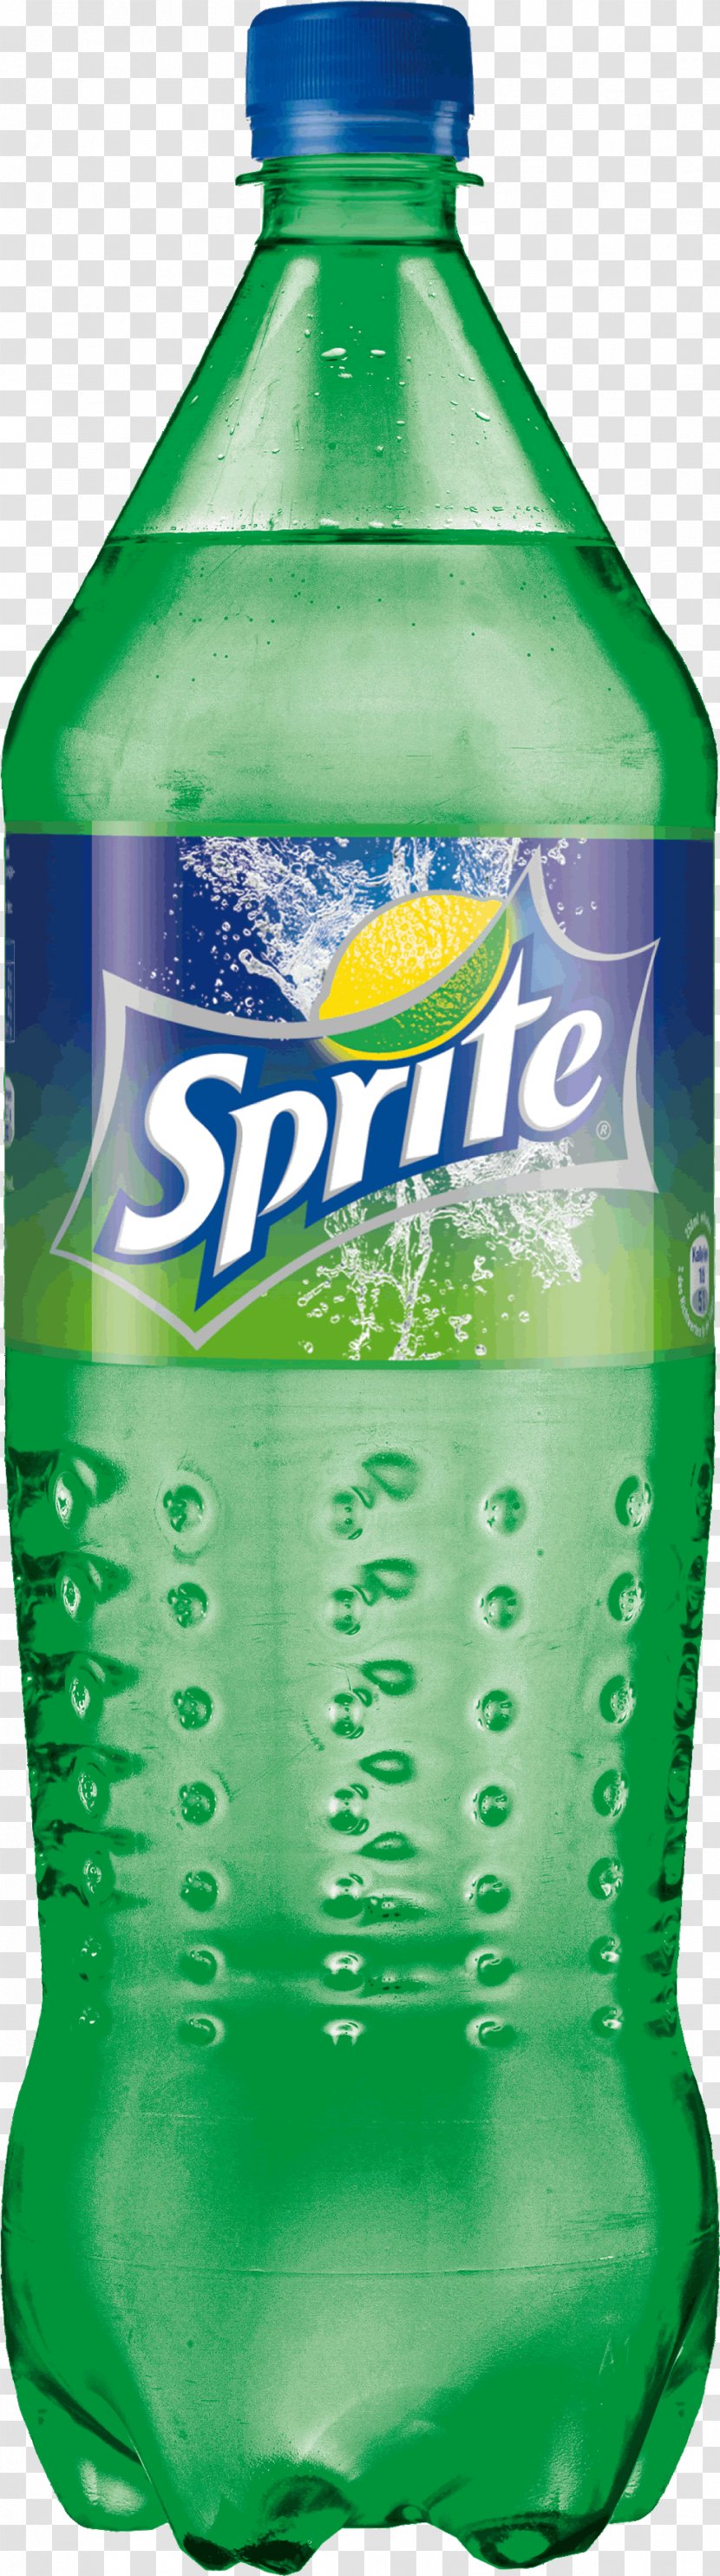 Sprite Zero Soft Drink - Bottle Image Transparent PNG